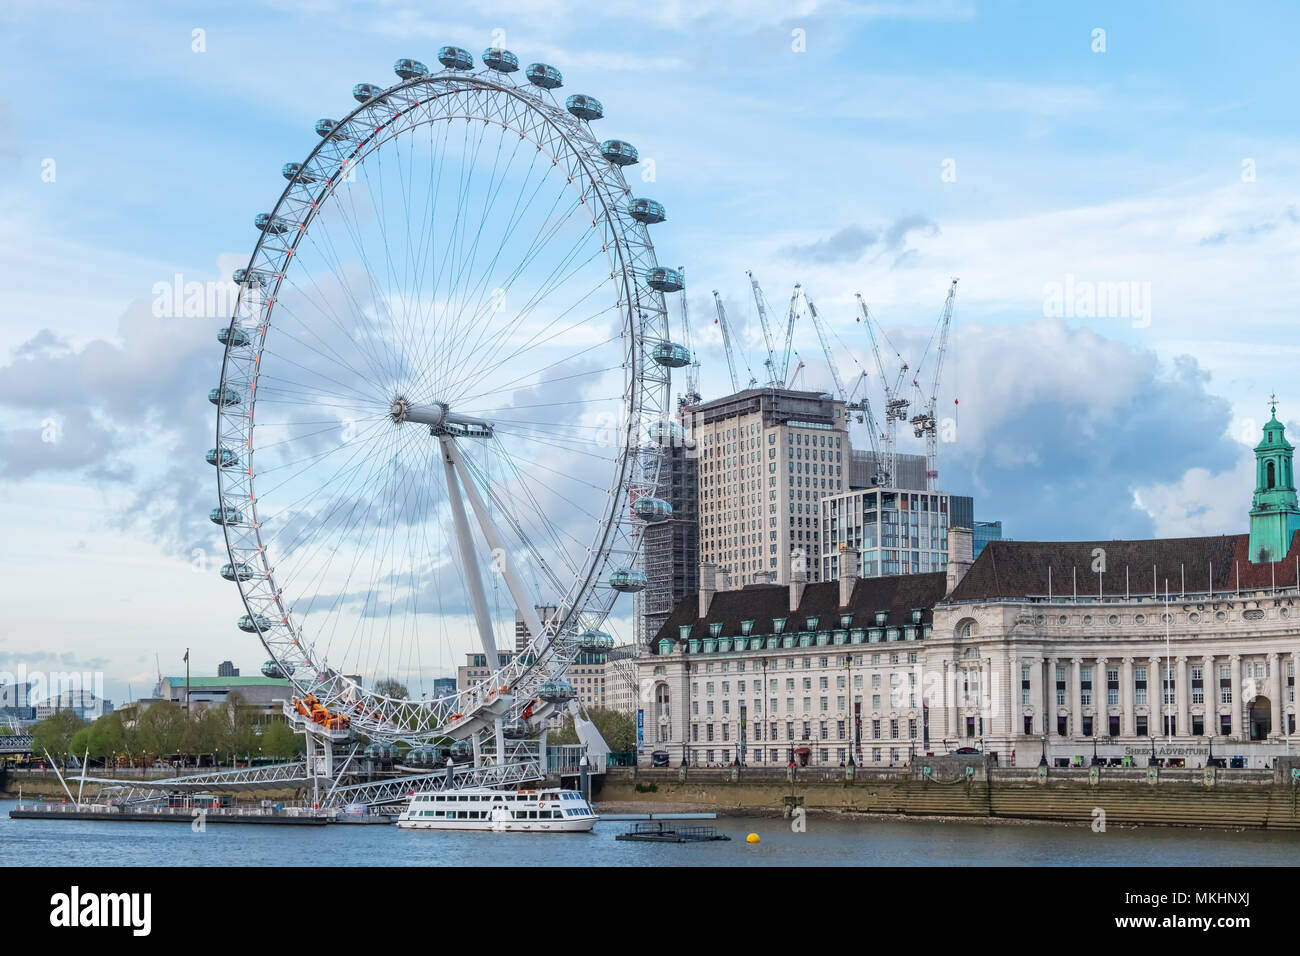 Le London Eye est une grande roue située sur la rive sud de la rivière Thames. Il est considéré comme l'un des Londpnâ les plus populaires d'attracti Banque D'Images